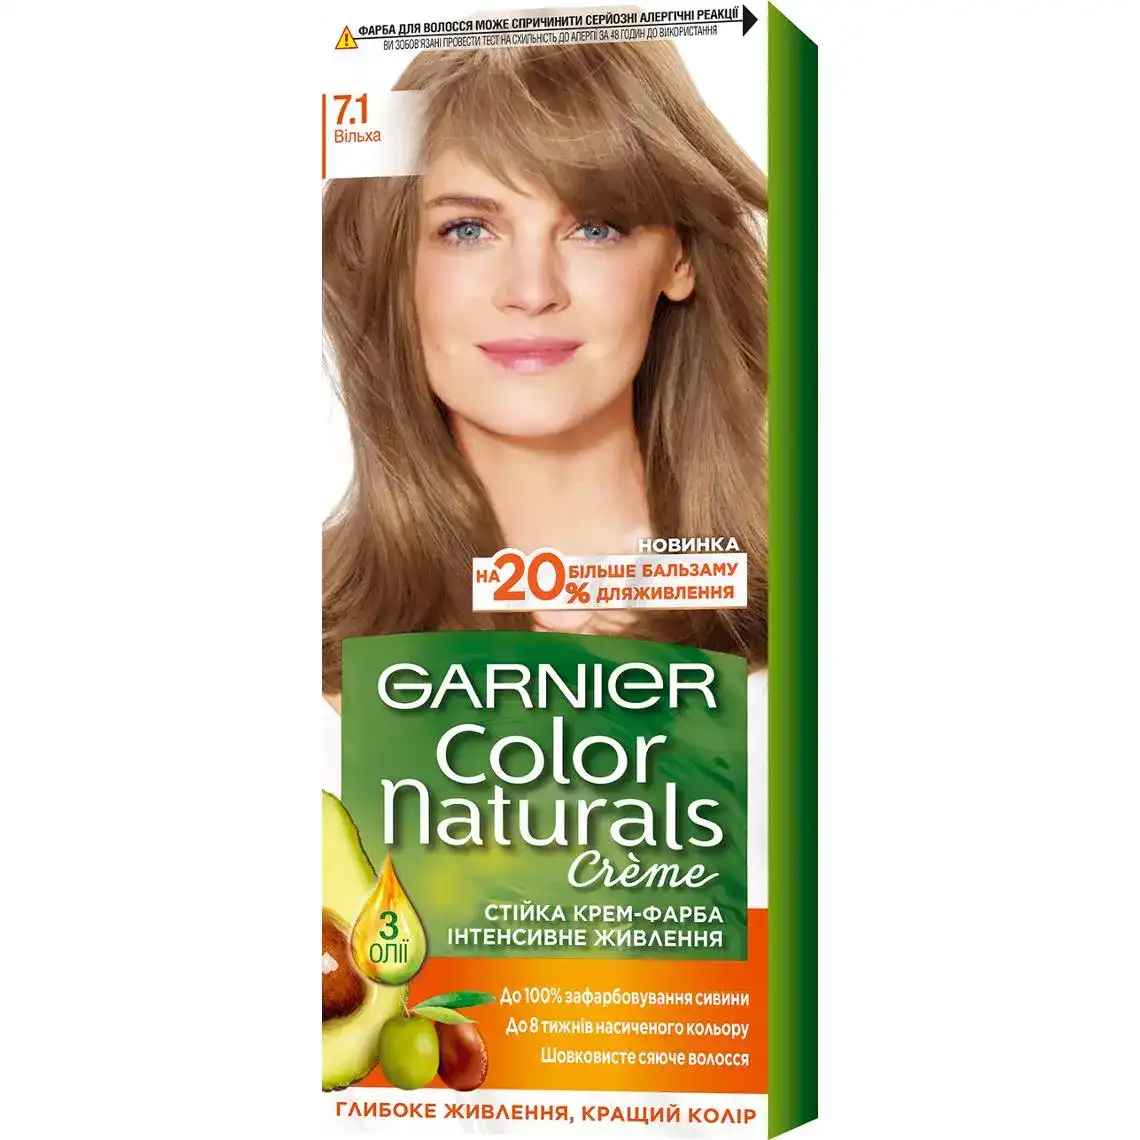 Крем-фарба для волосся Garnier Color Naturals 7.1 вільха